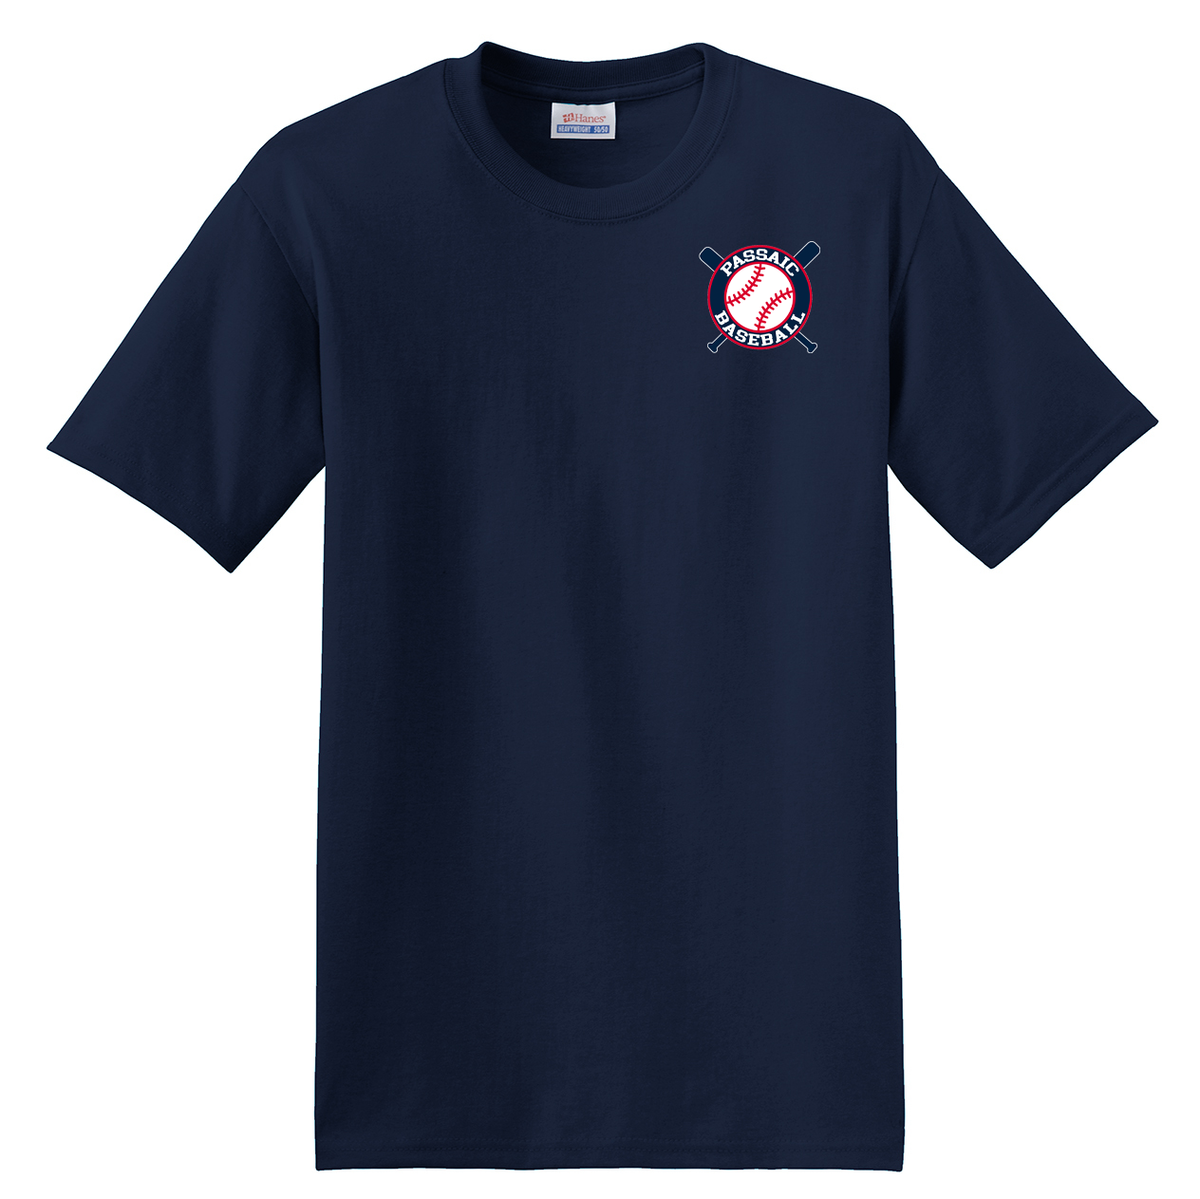 Passaic Indians Baseball T-Shirt